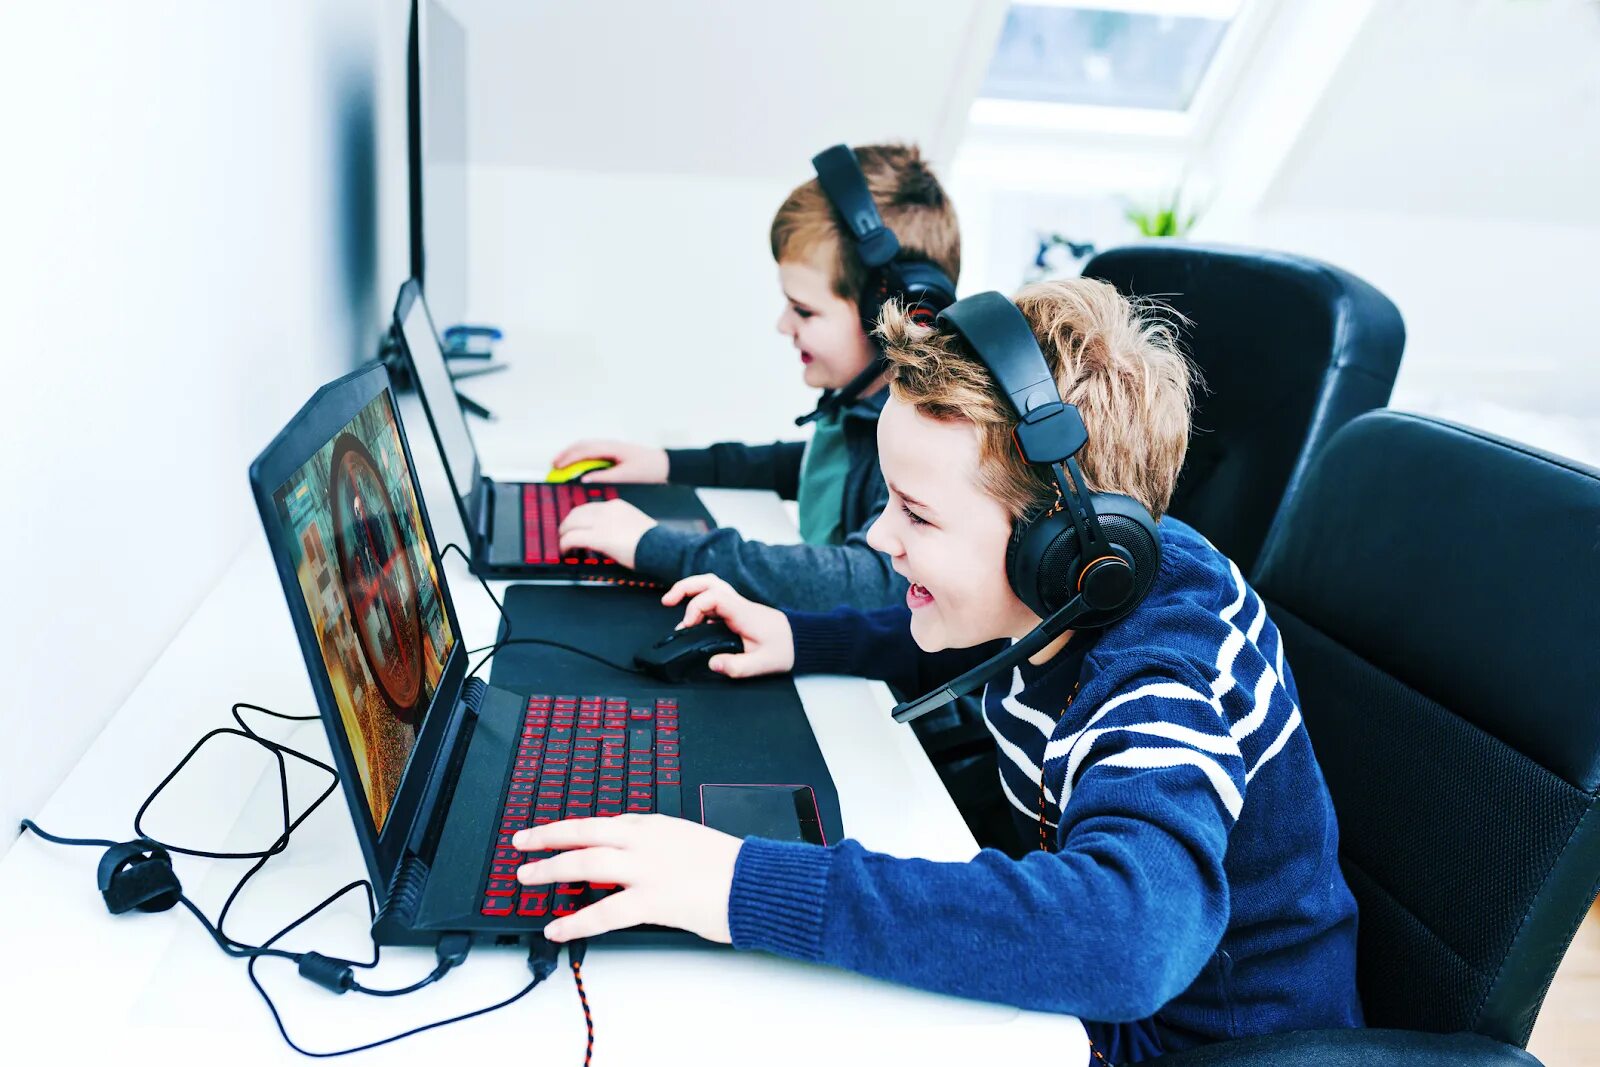 Время играть интернет. Игровая зависимость. Ребенок за компьютером. Дети играющие в комп. Подросток играющий в компьютер.